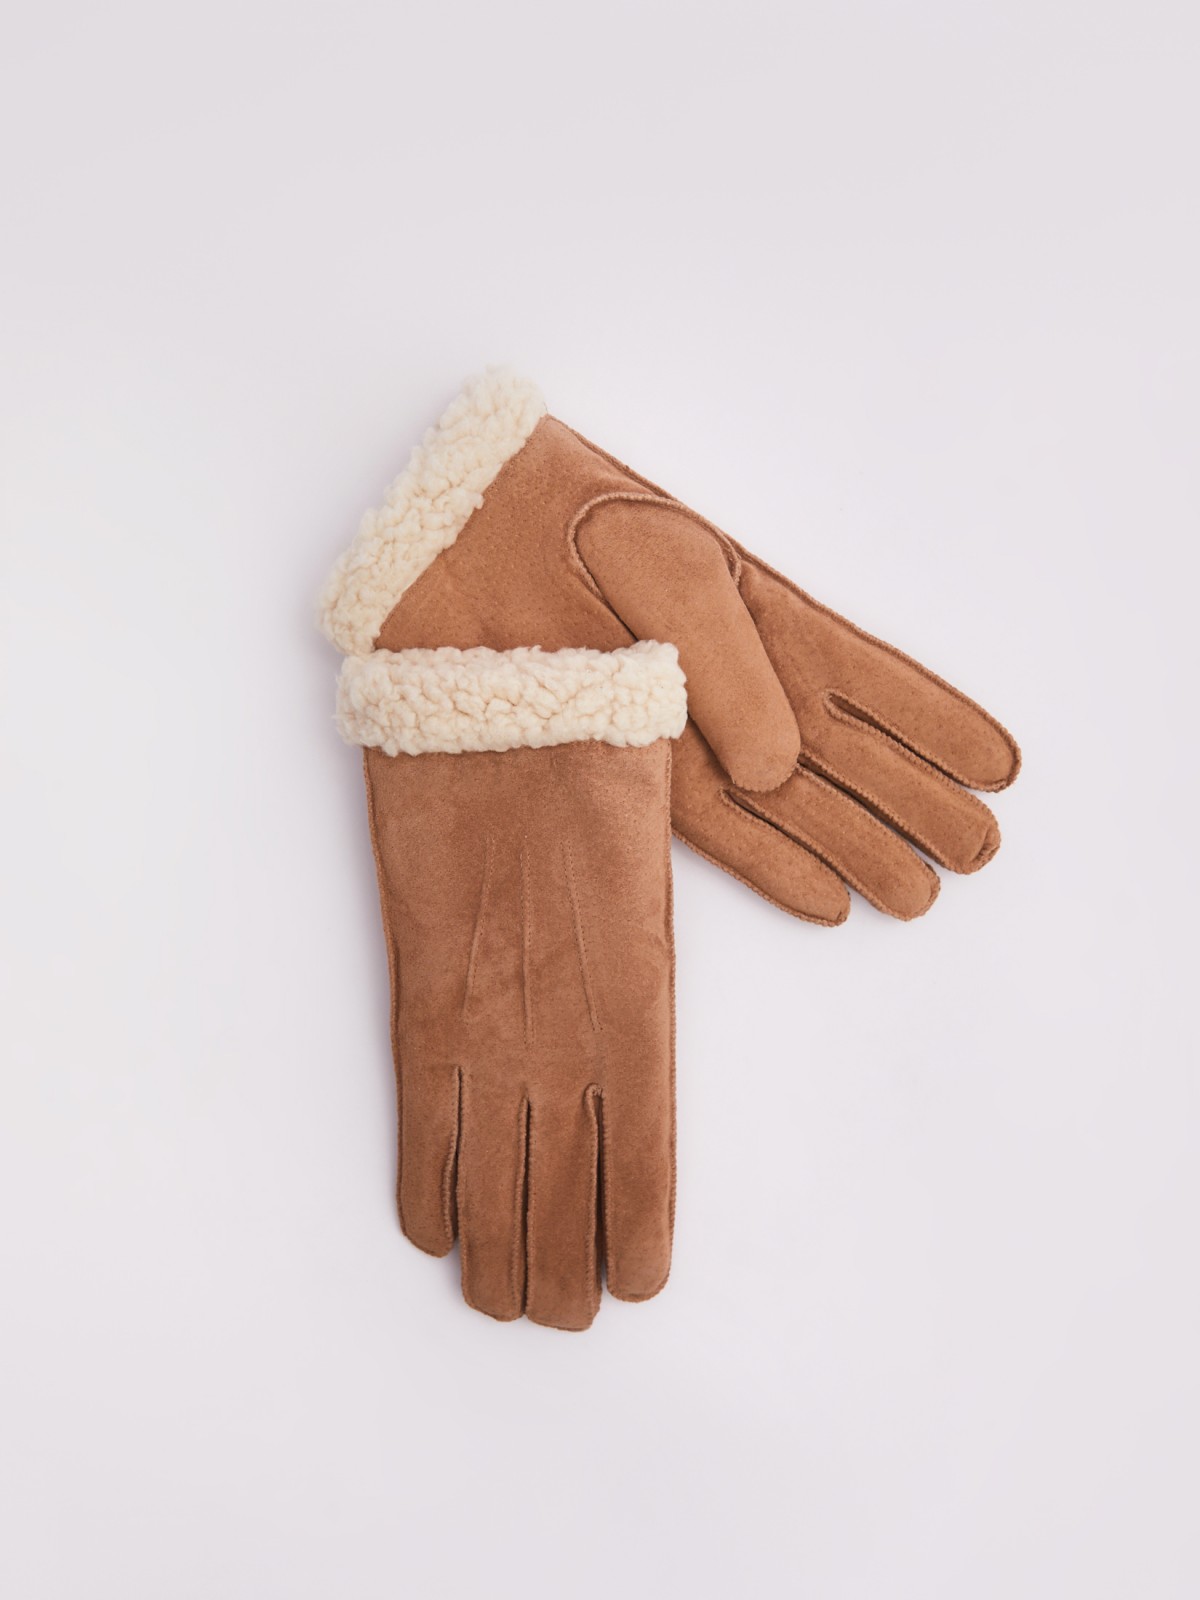 Тёплые замшевые перчатки с экомехом zolla 223429662015, цвет бежевый, размер S/M - фото 1